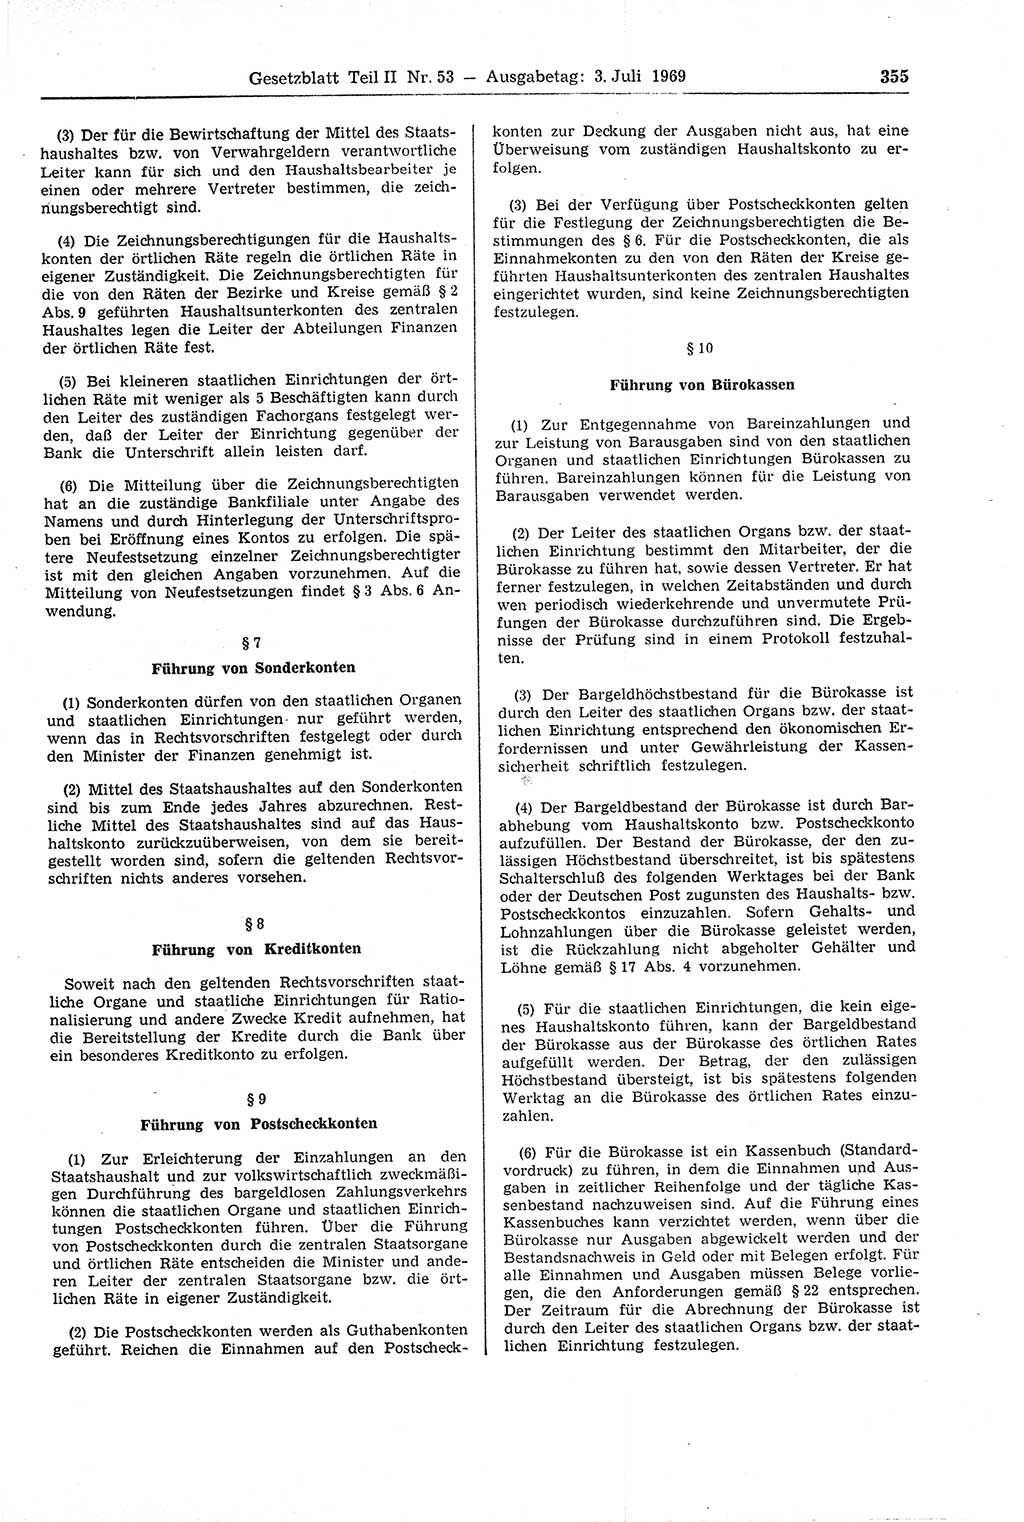 Gesetzblatt (GBl.) der Deutschen Demokratischen Republik (DDR) Teil ⅠⅠ 1969, Seite 355 (GBl. DDR ⅠⅠ 1969, S. 355)